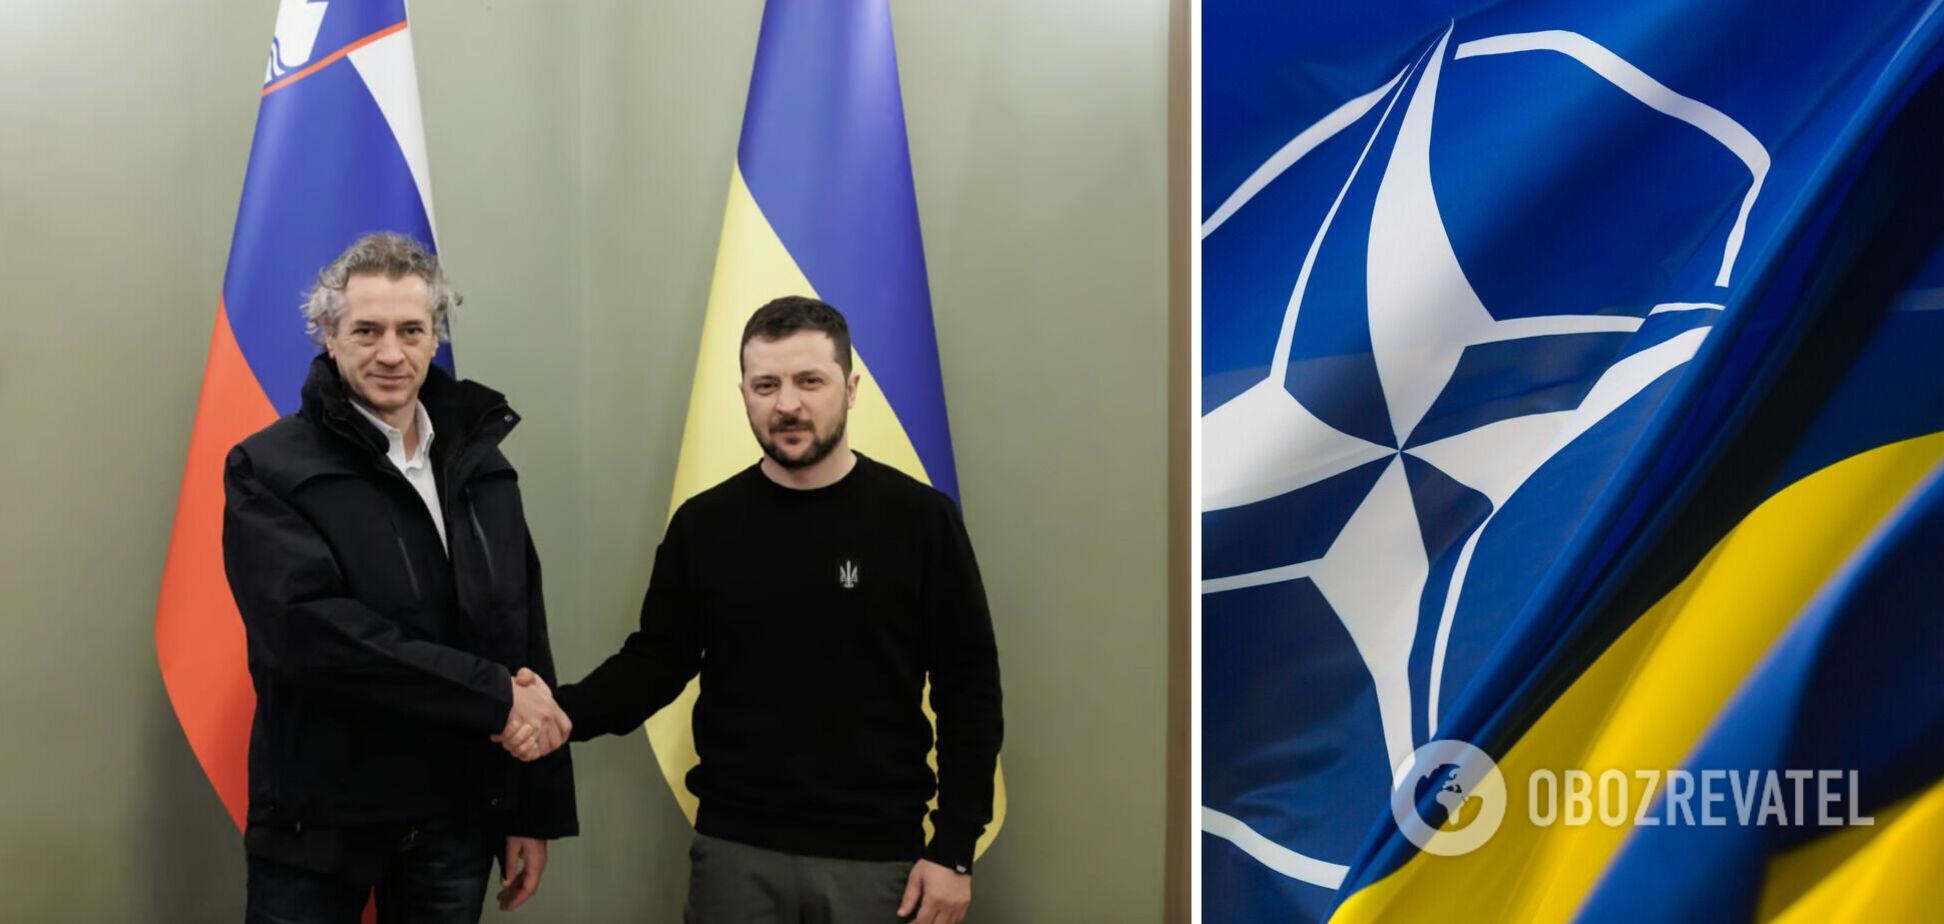 Словения поддержит вступление Украины в НАТО: Зеленский и премьер Голоб подписали общую декларацию. Фото